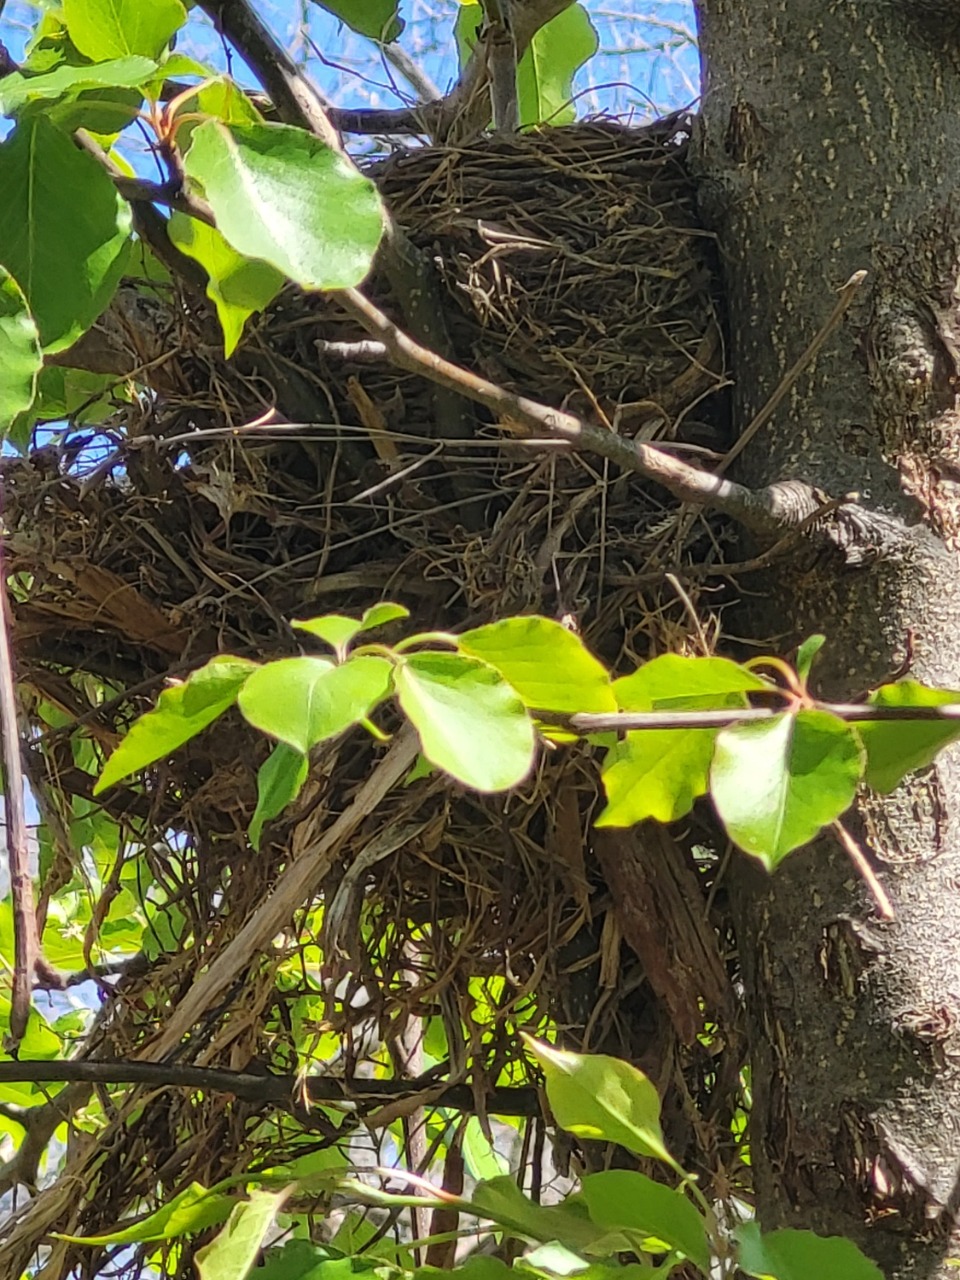 Robin nest in tree